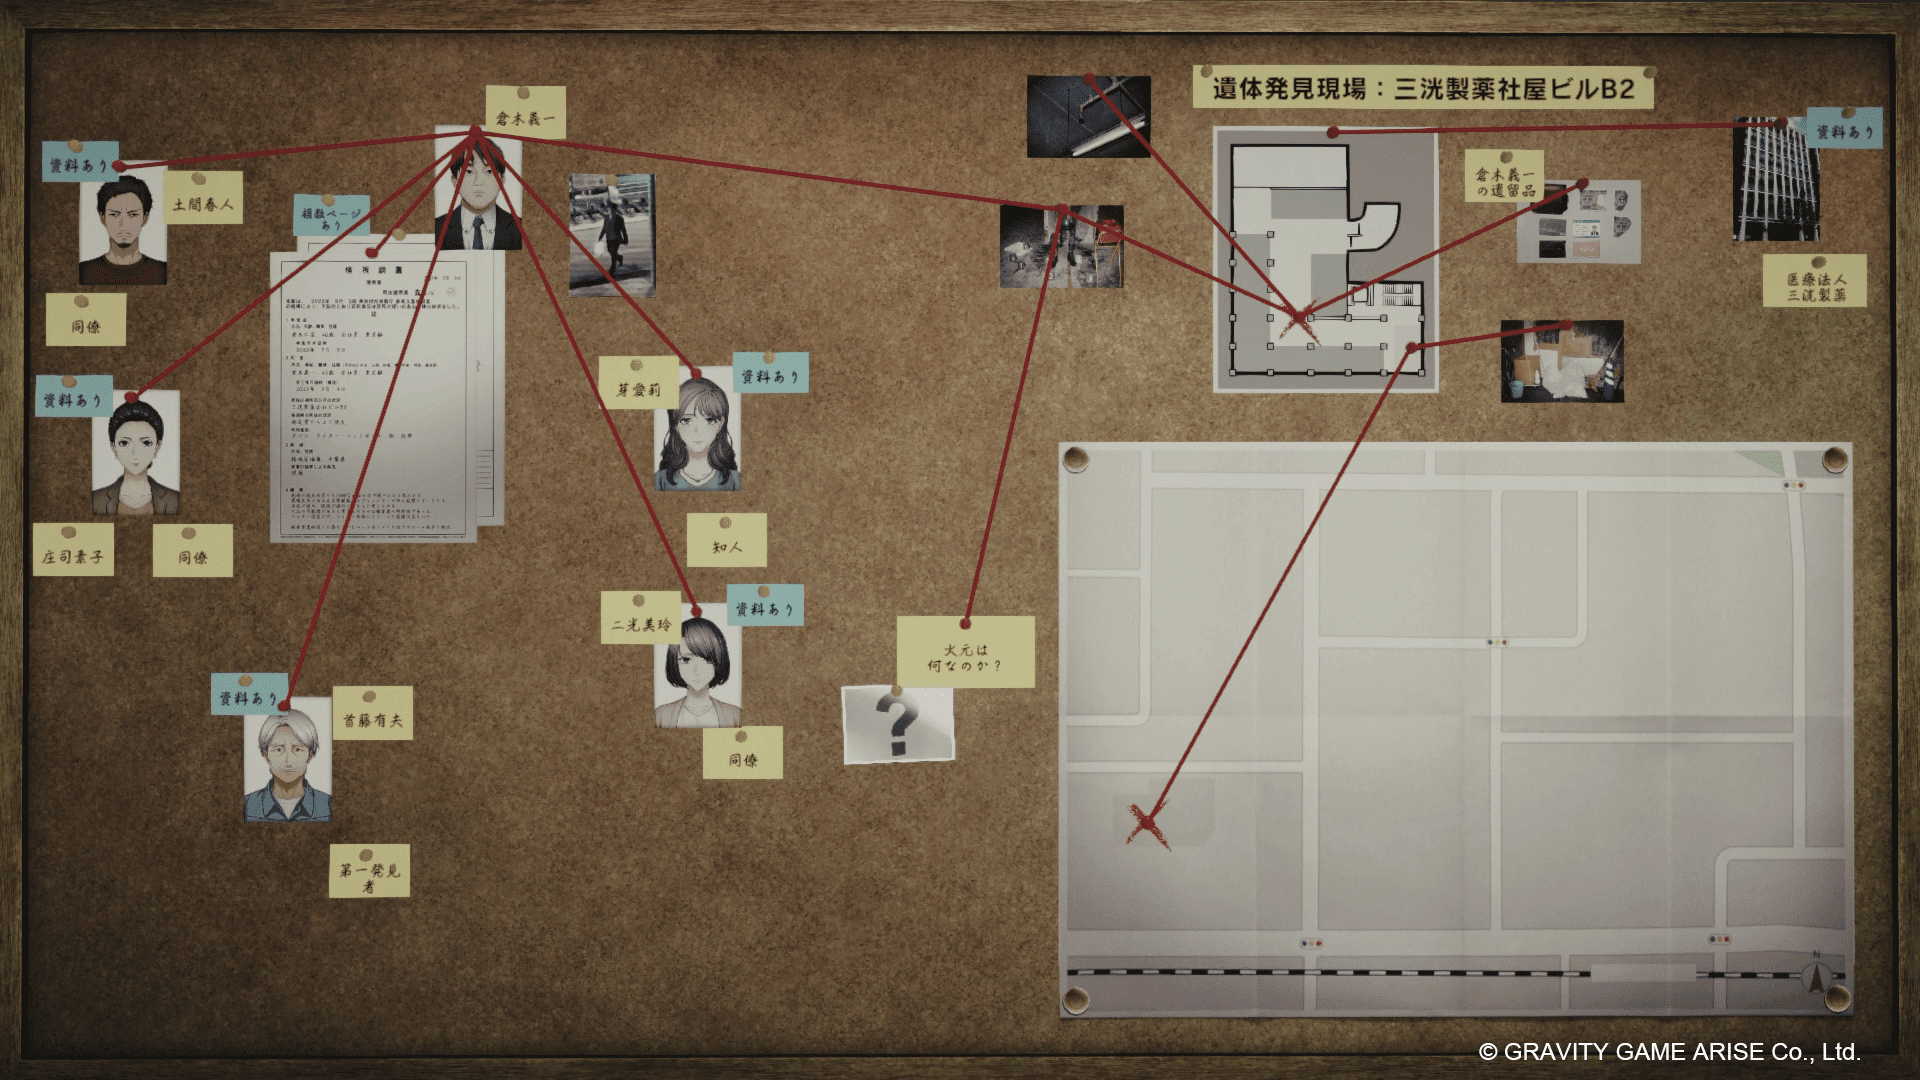 リアルな解析ツールを使って未解決事件を捜査するゲーム『東京サイコデミック』が、元刑事の「リーゼント刑事」とコラボした動画が公開_002